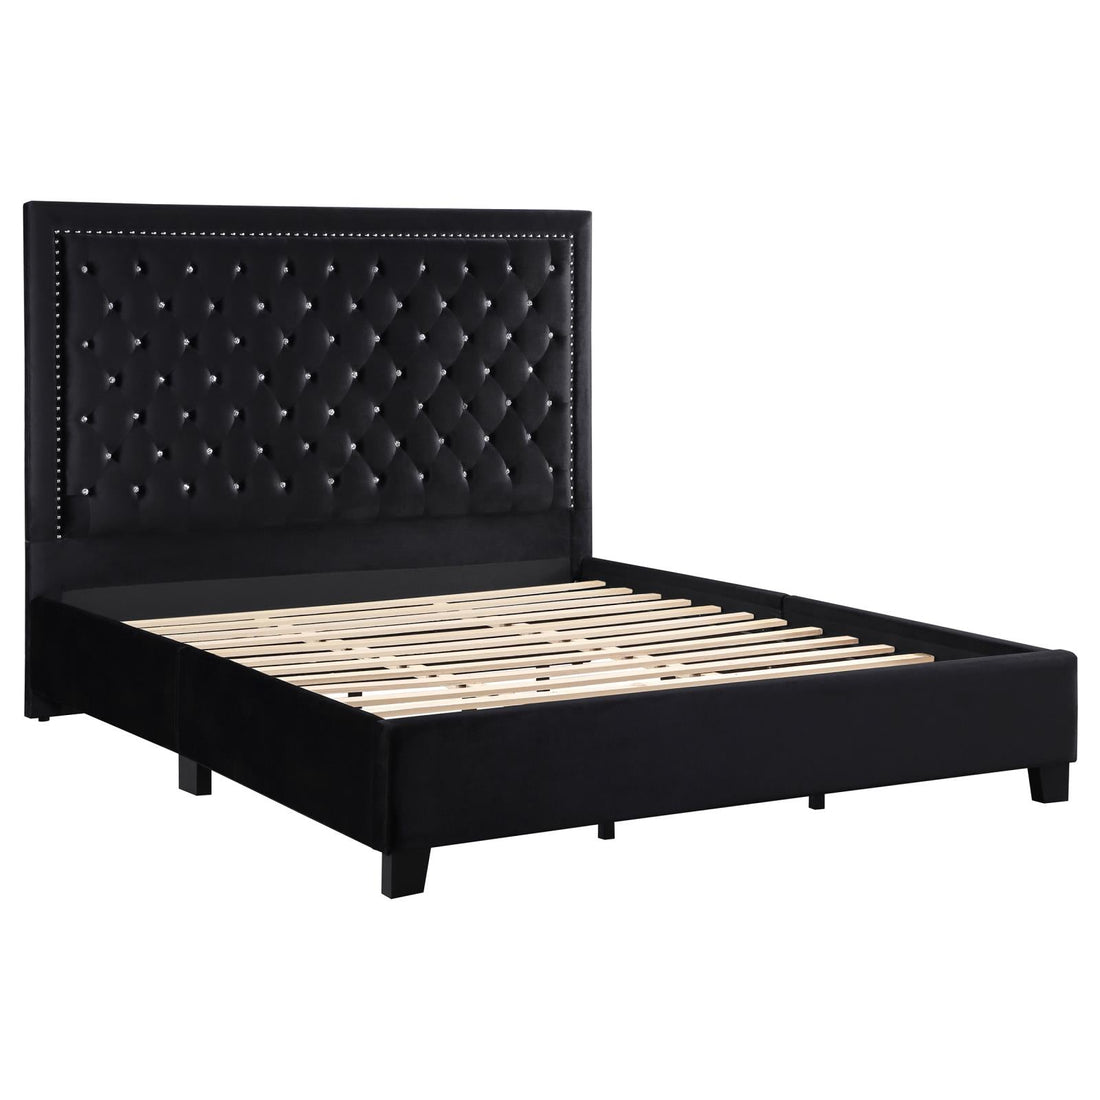 Hailey Upholstered Tufted Platform Eastern King Bed Black - 315925KE - Bien Home Furniture &amp; Electronics